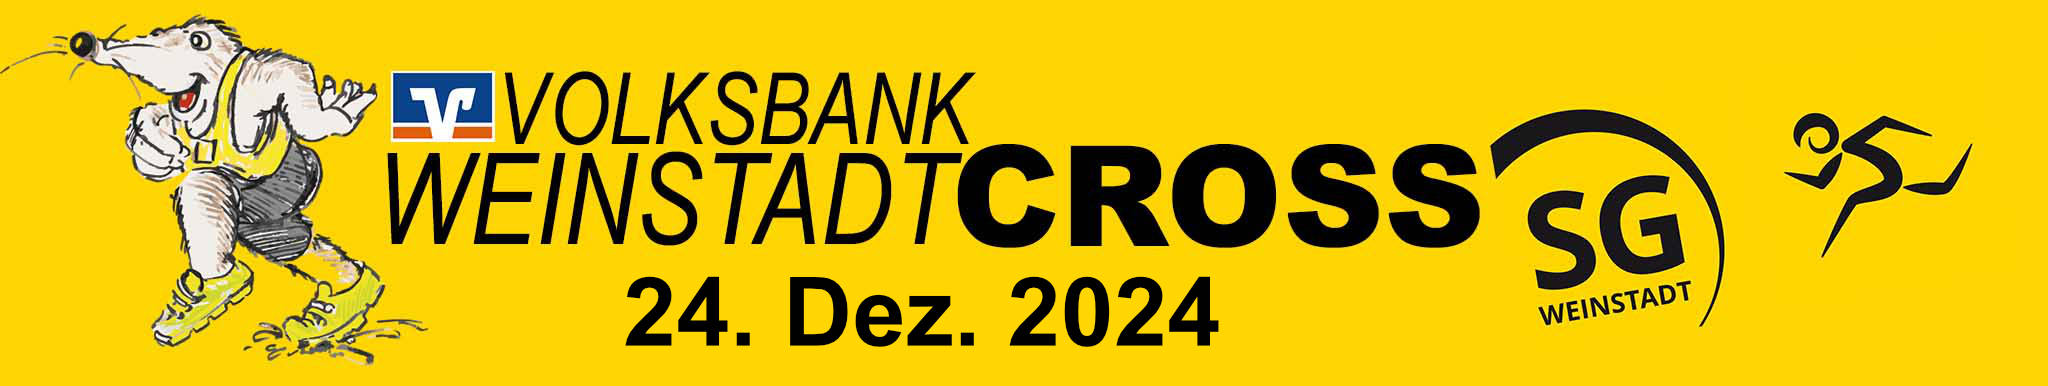 Volksbank-Weinstadtcross-Logo-2020-gelb-mit-Datum